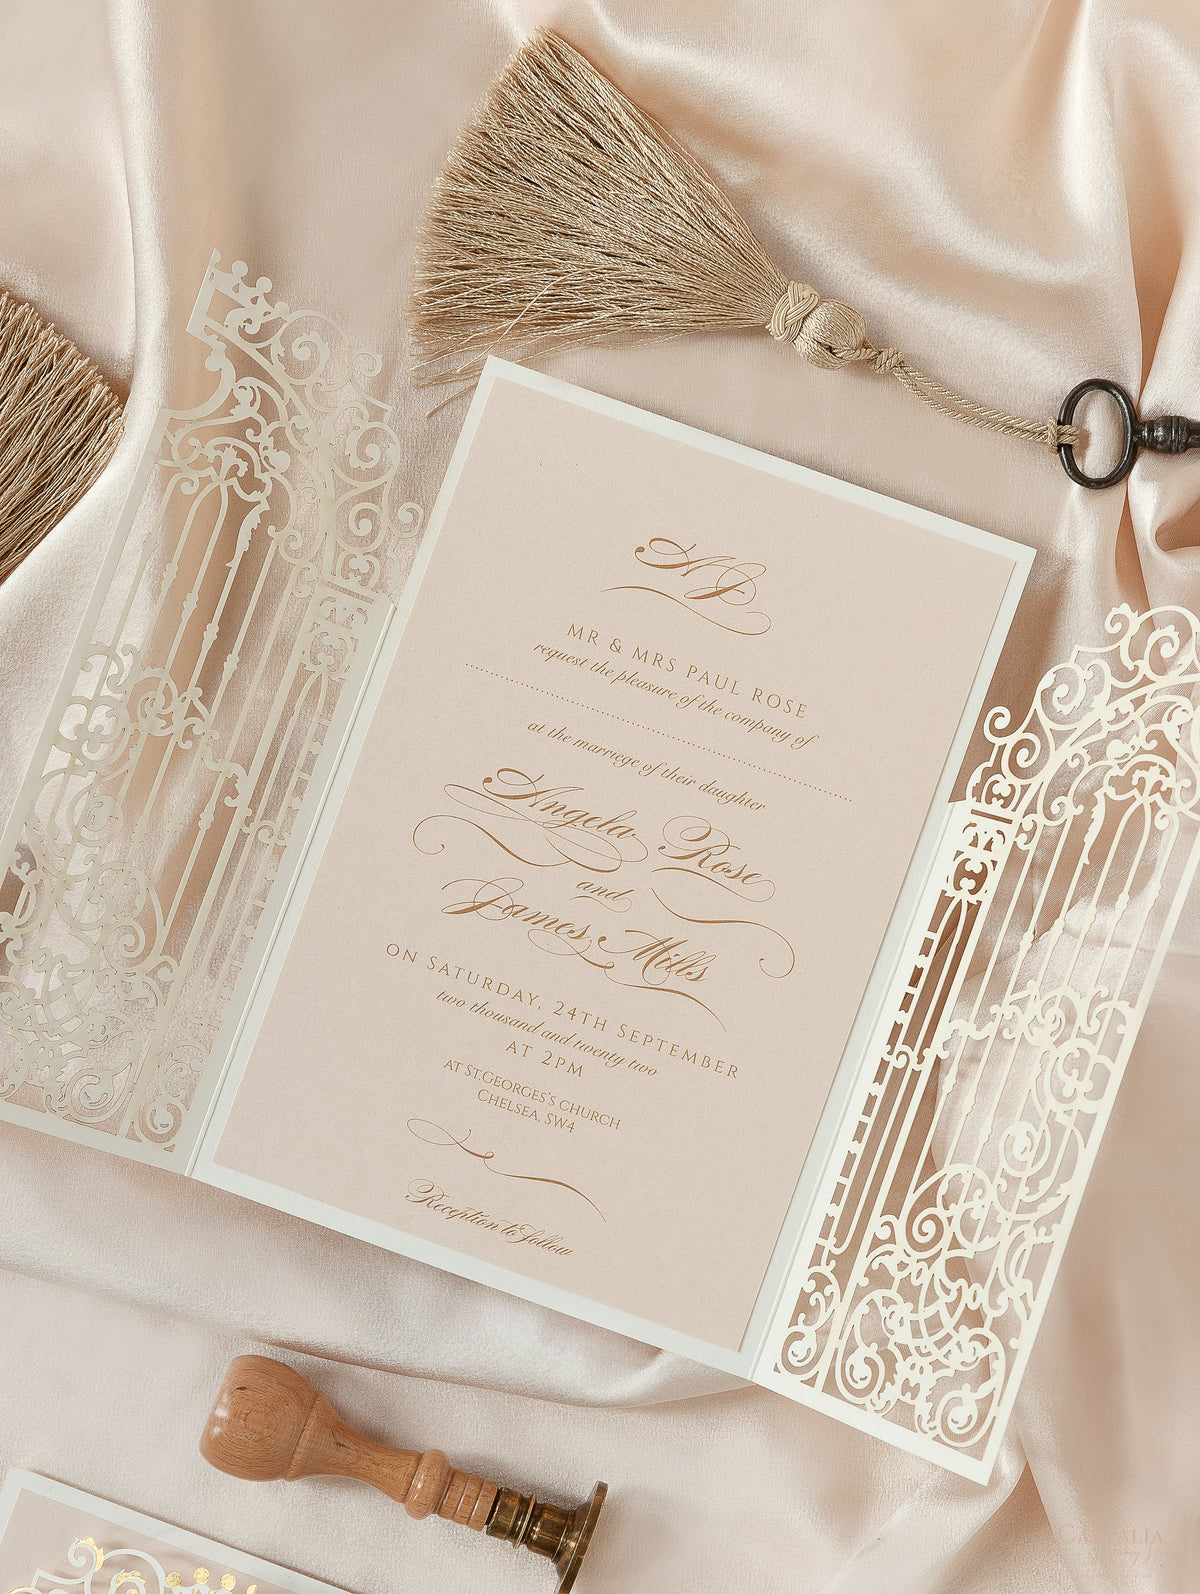 Invitación del día de la boda cortada con láser con puerta ornamental dorada de lámina de lujo con caligrafía moderna de lámina dorada